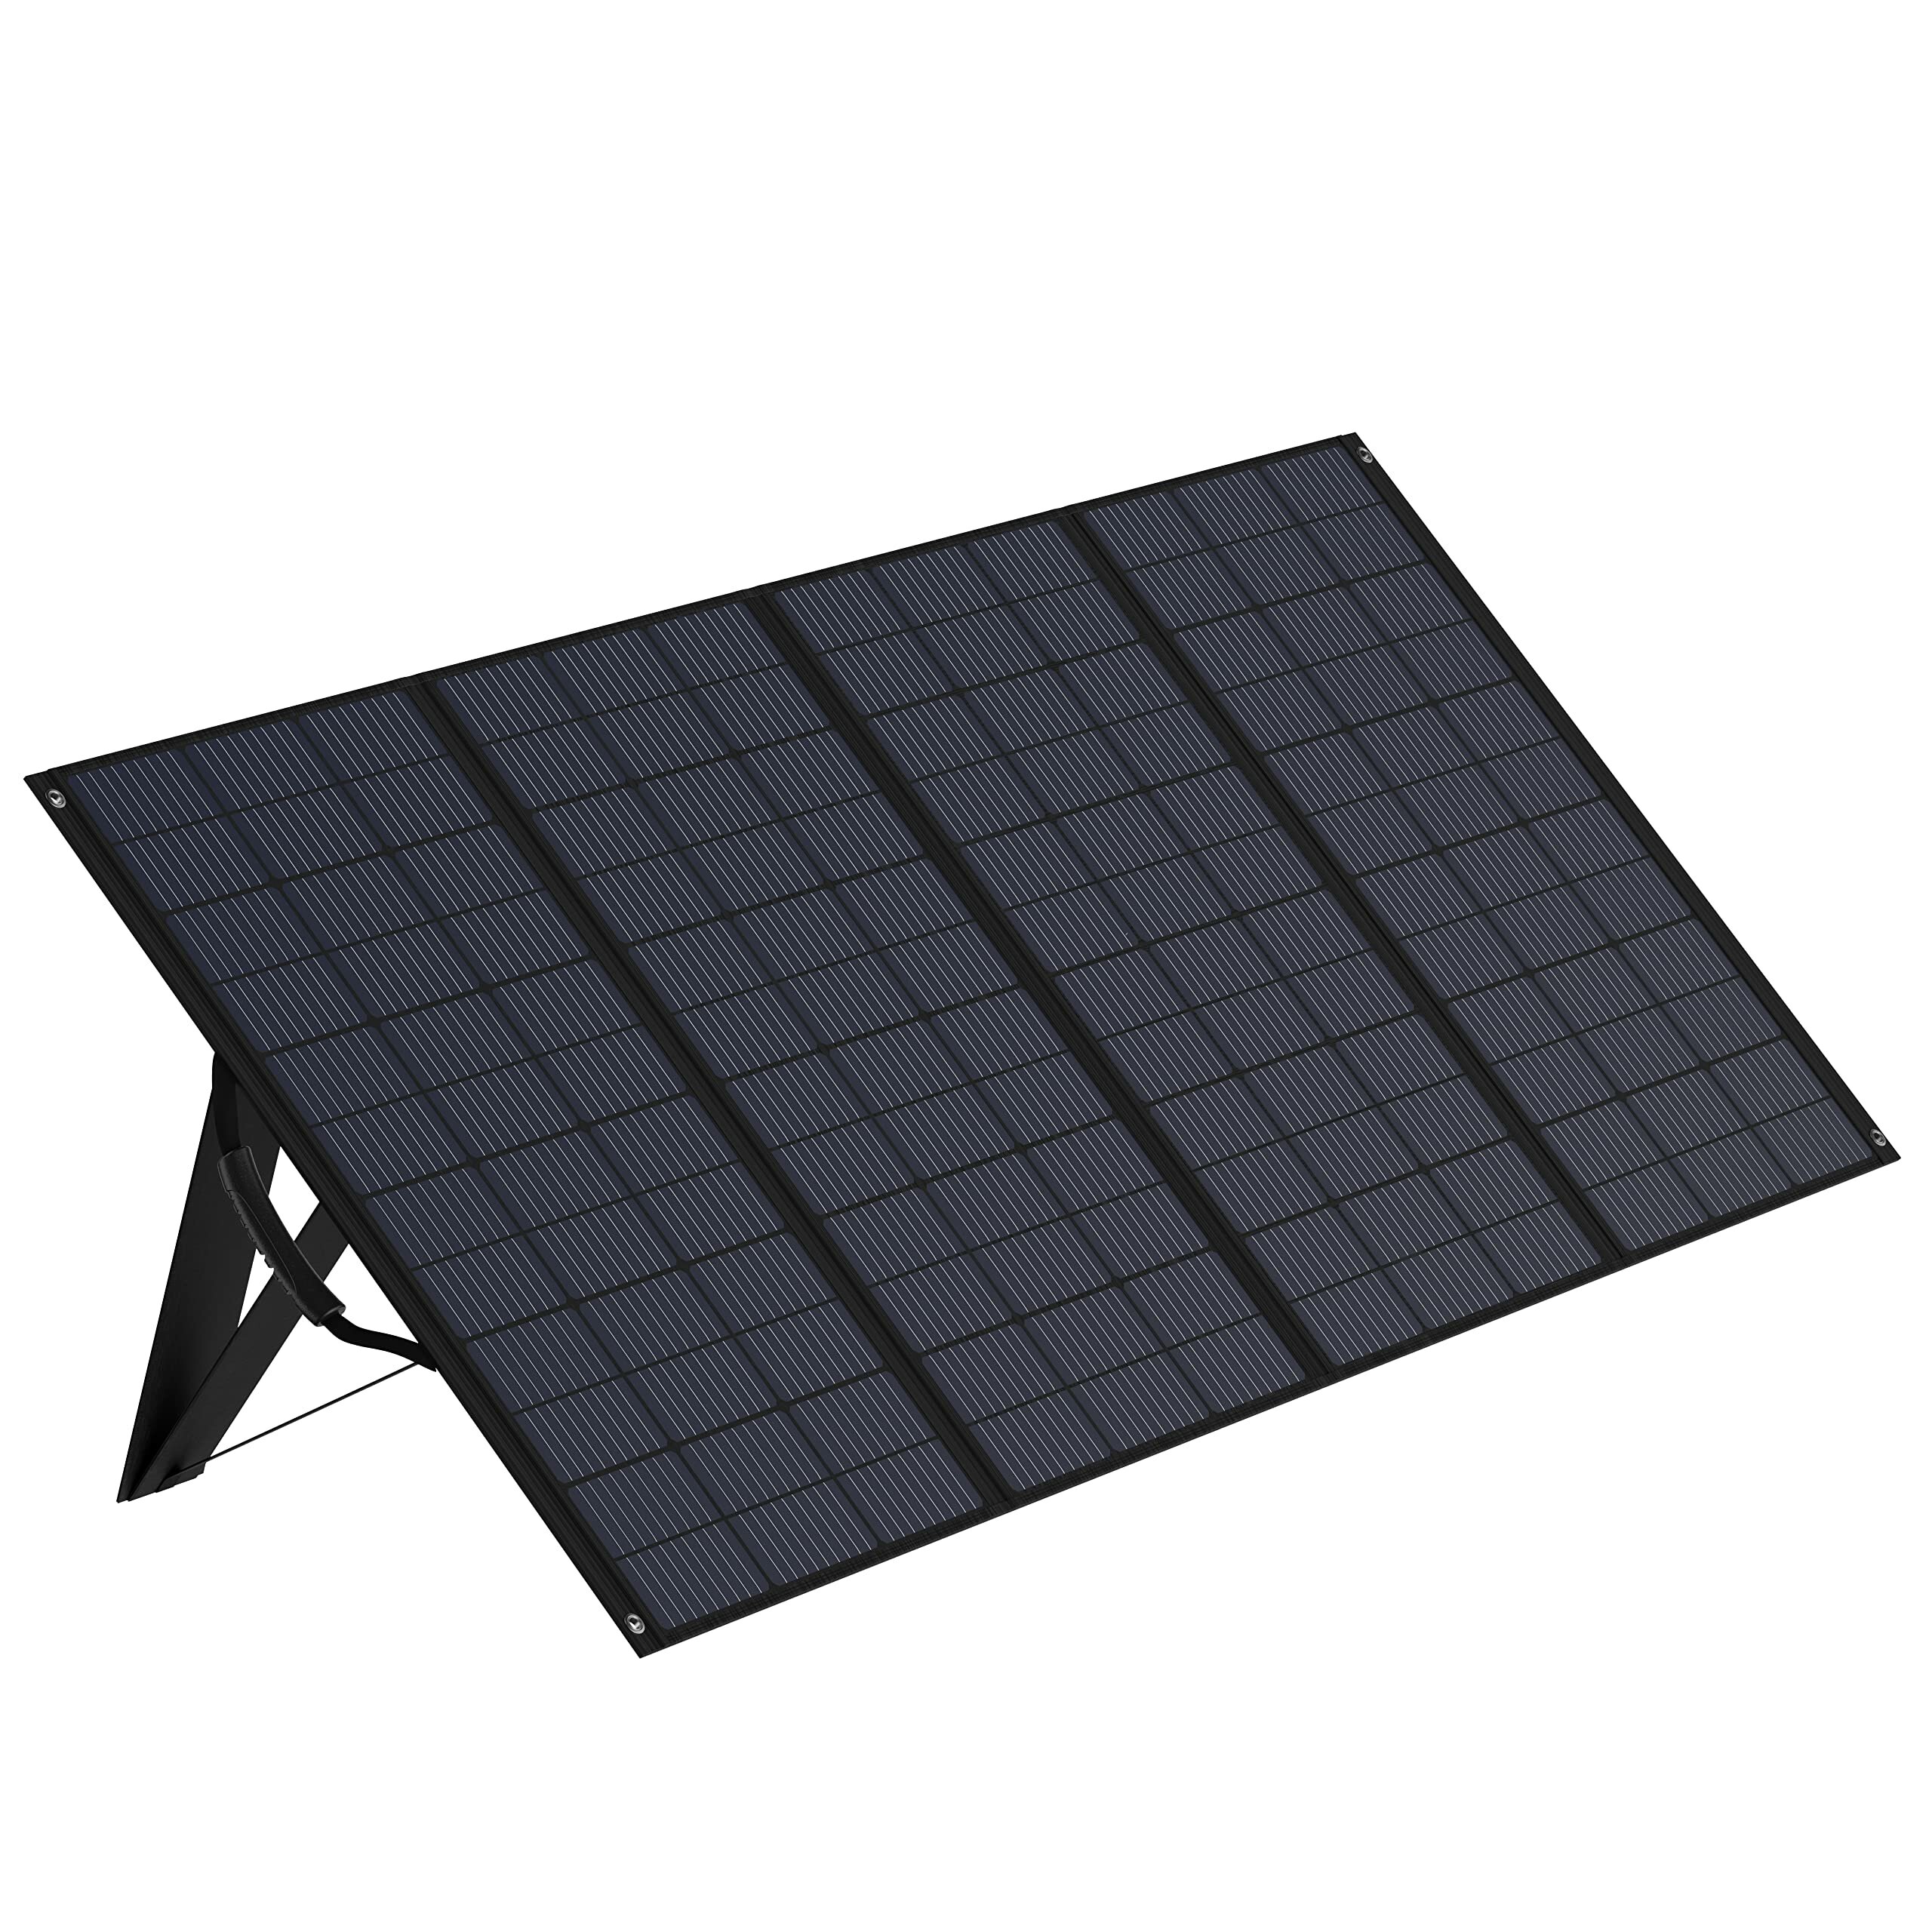 [UE Direto] Painel Solar Portátil de 400W Zendure com Revestimento ETFE, Alta Eficiência de 22%, à Prova d'Água IP65, Carregador Solar de Saída Multi-Contato para Aventuras ao Ar Livre, Apagões, Vida em Van e Gerador Solar